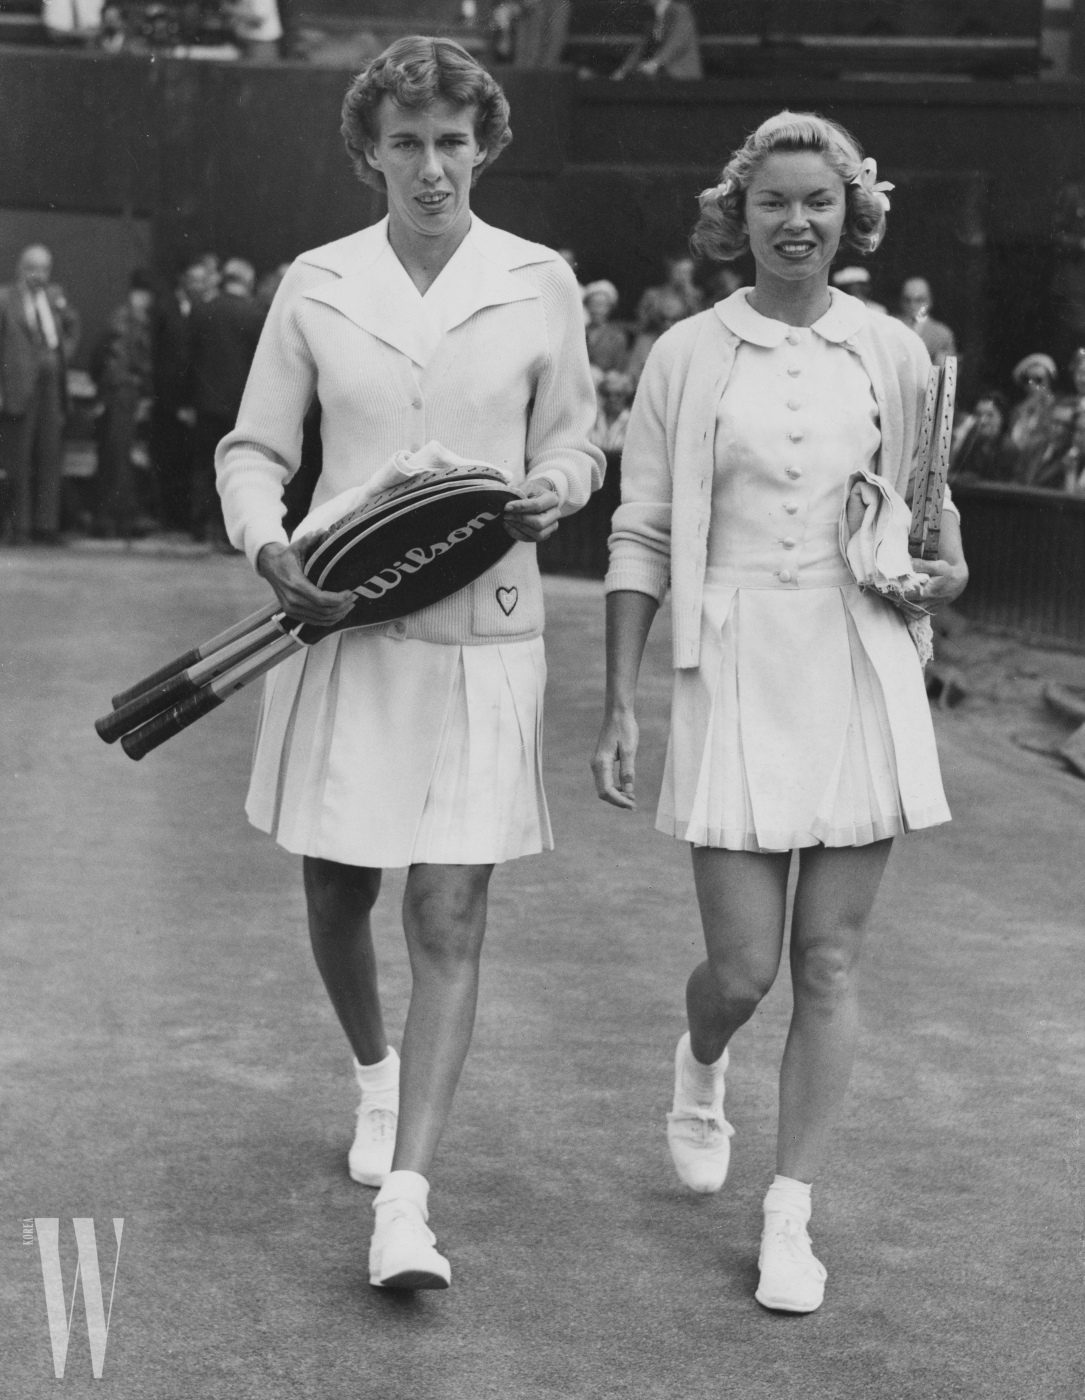 1955년 윔블던 여자 싱글 챔피언십에 출전한 베버리 베이커 플렛츠 (오른쪽)